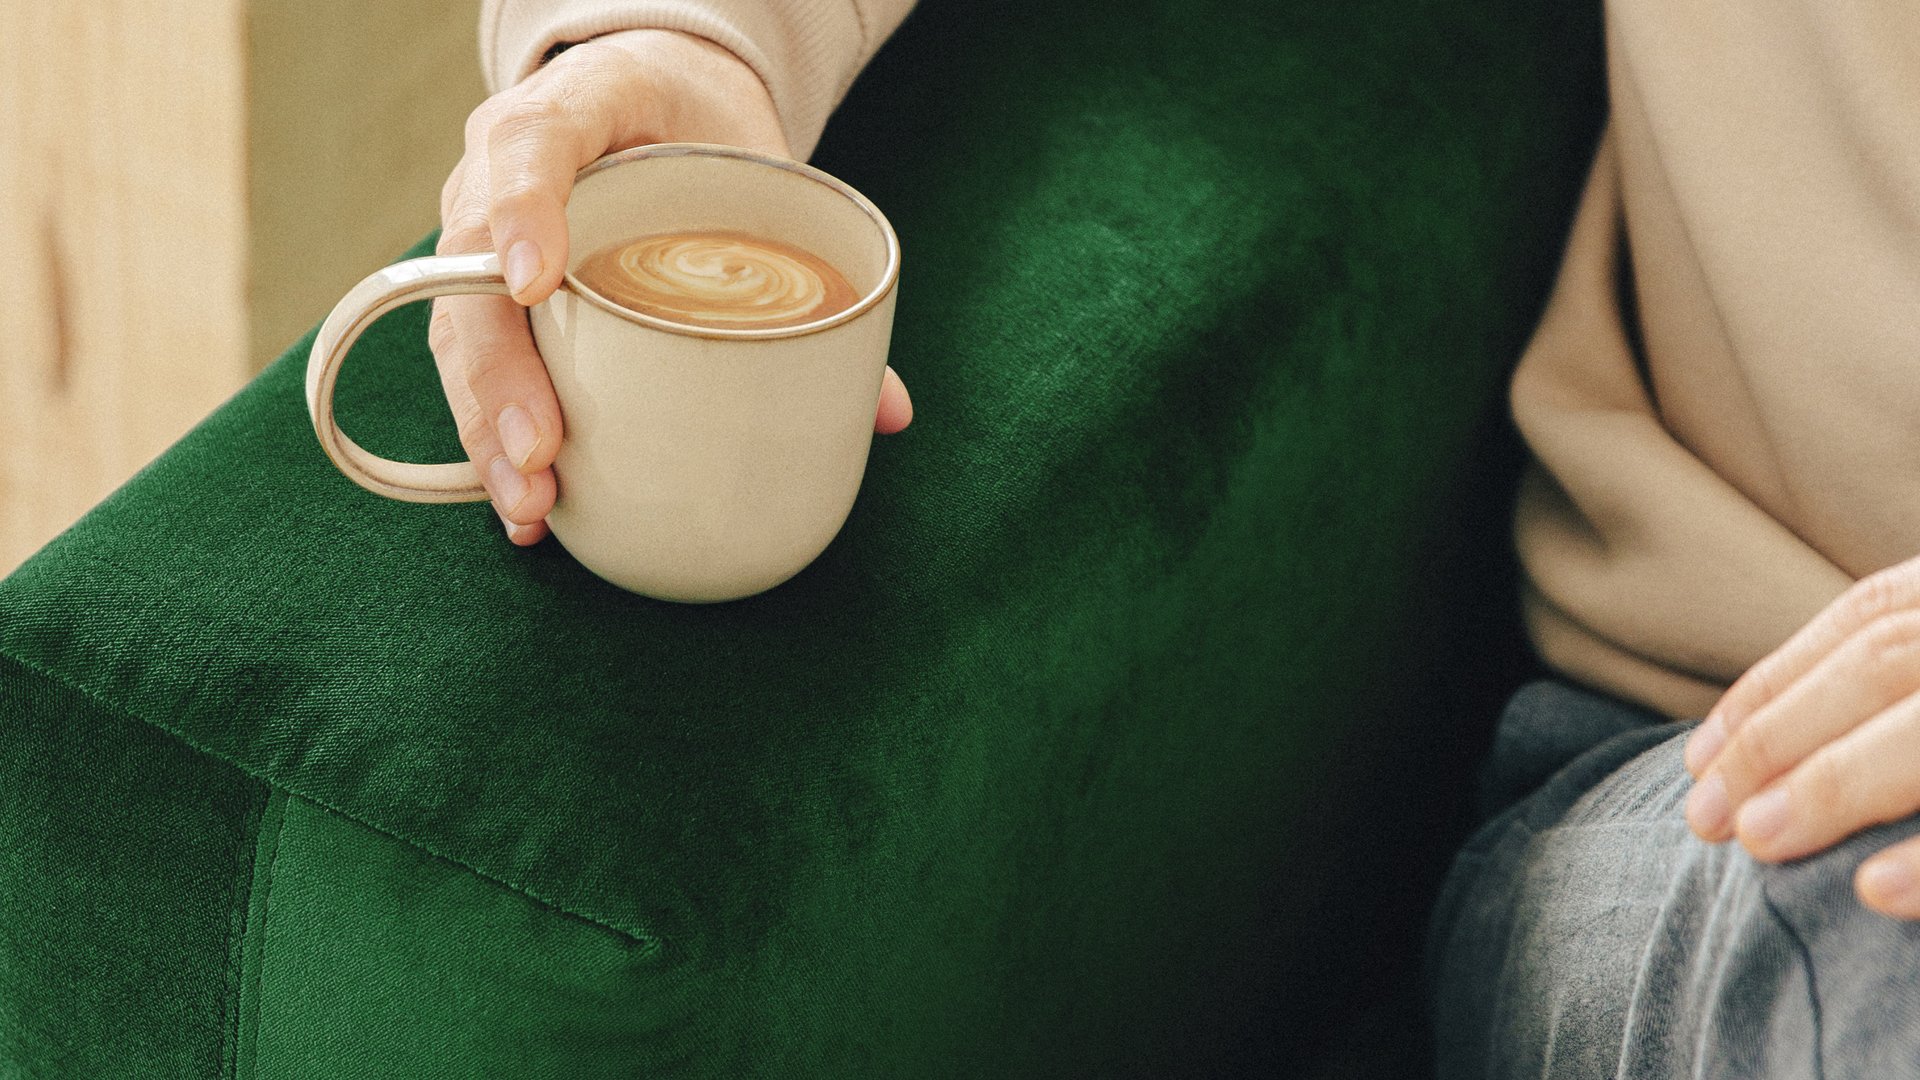 Lähikuva vihreästä samettikankaisesta sohvasta, keskellä kuvaa käsi joka pitelee kahvikuppia.